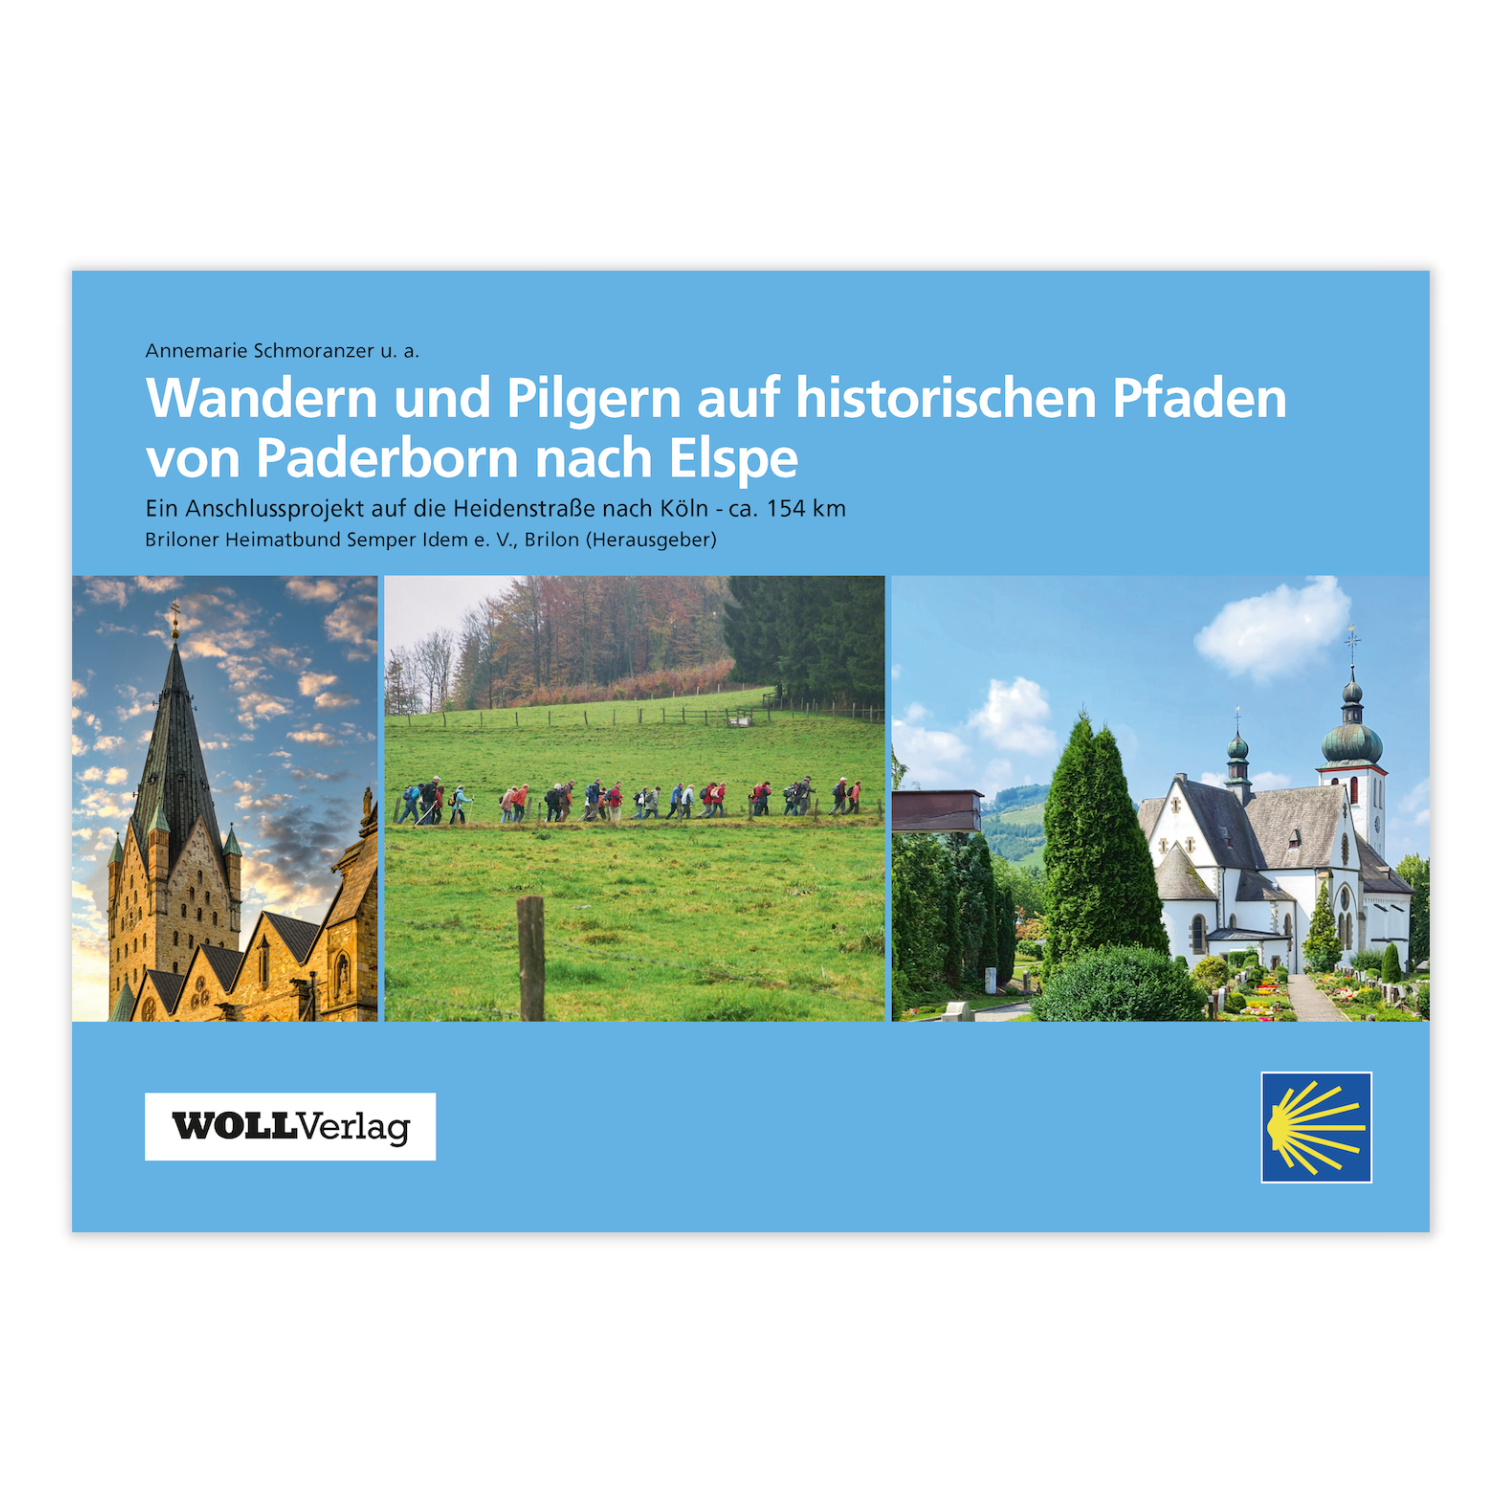 Wandern und Pilgern auf historischen Pfaden von Paderborn nach Elspe (Annemarie Schmoranzer)